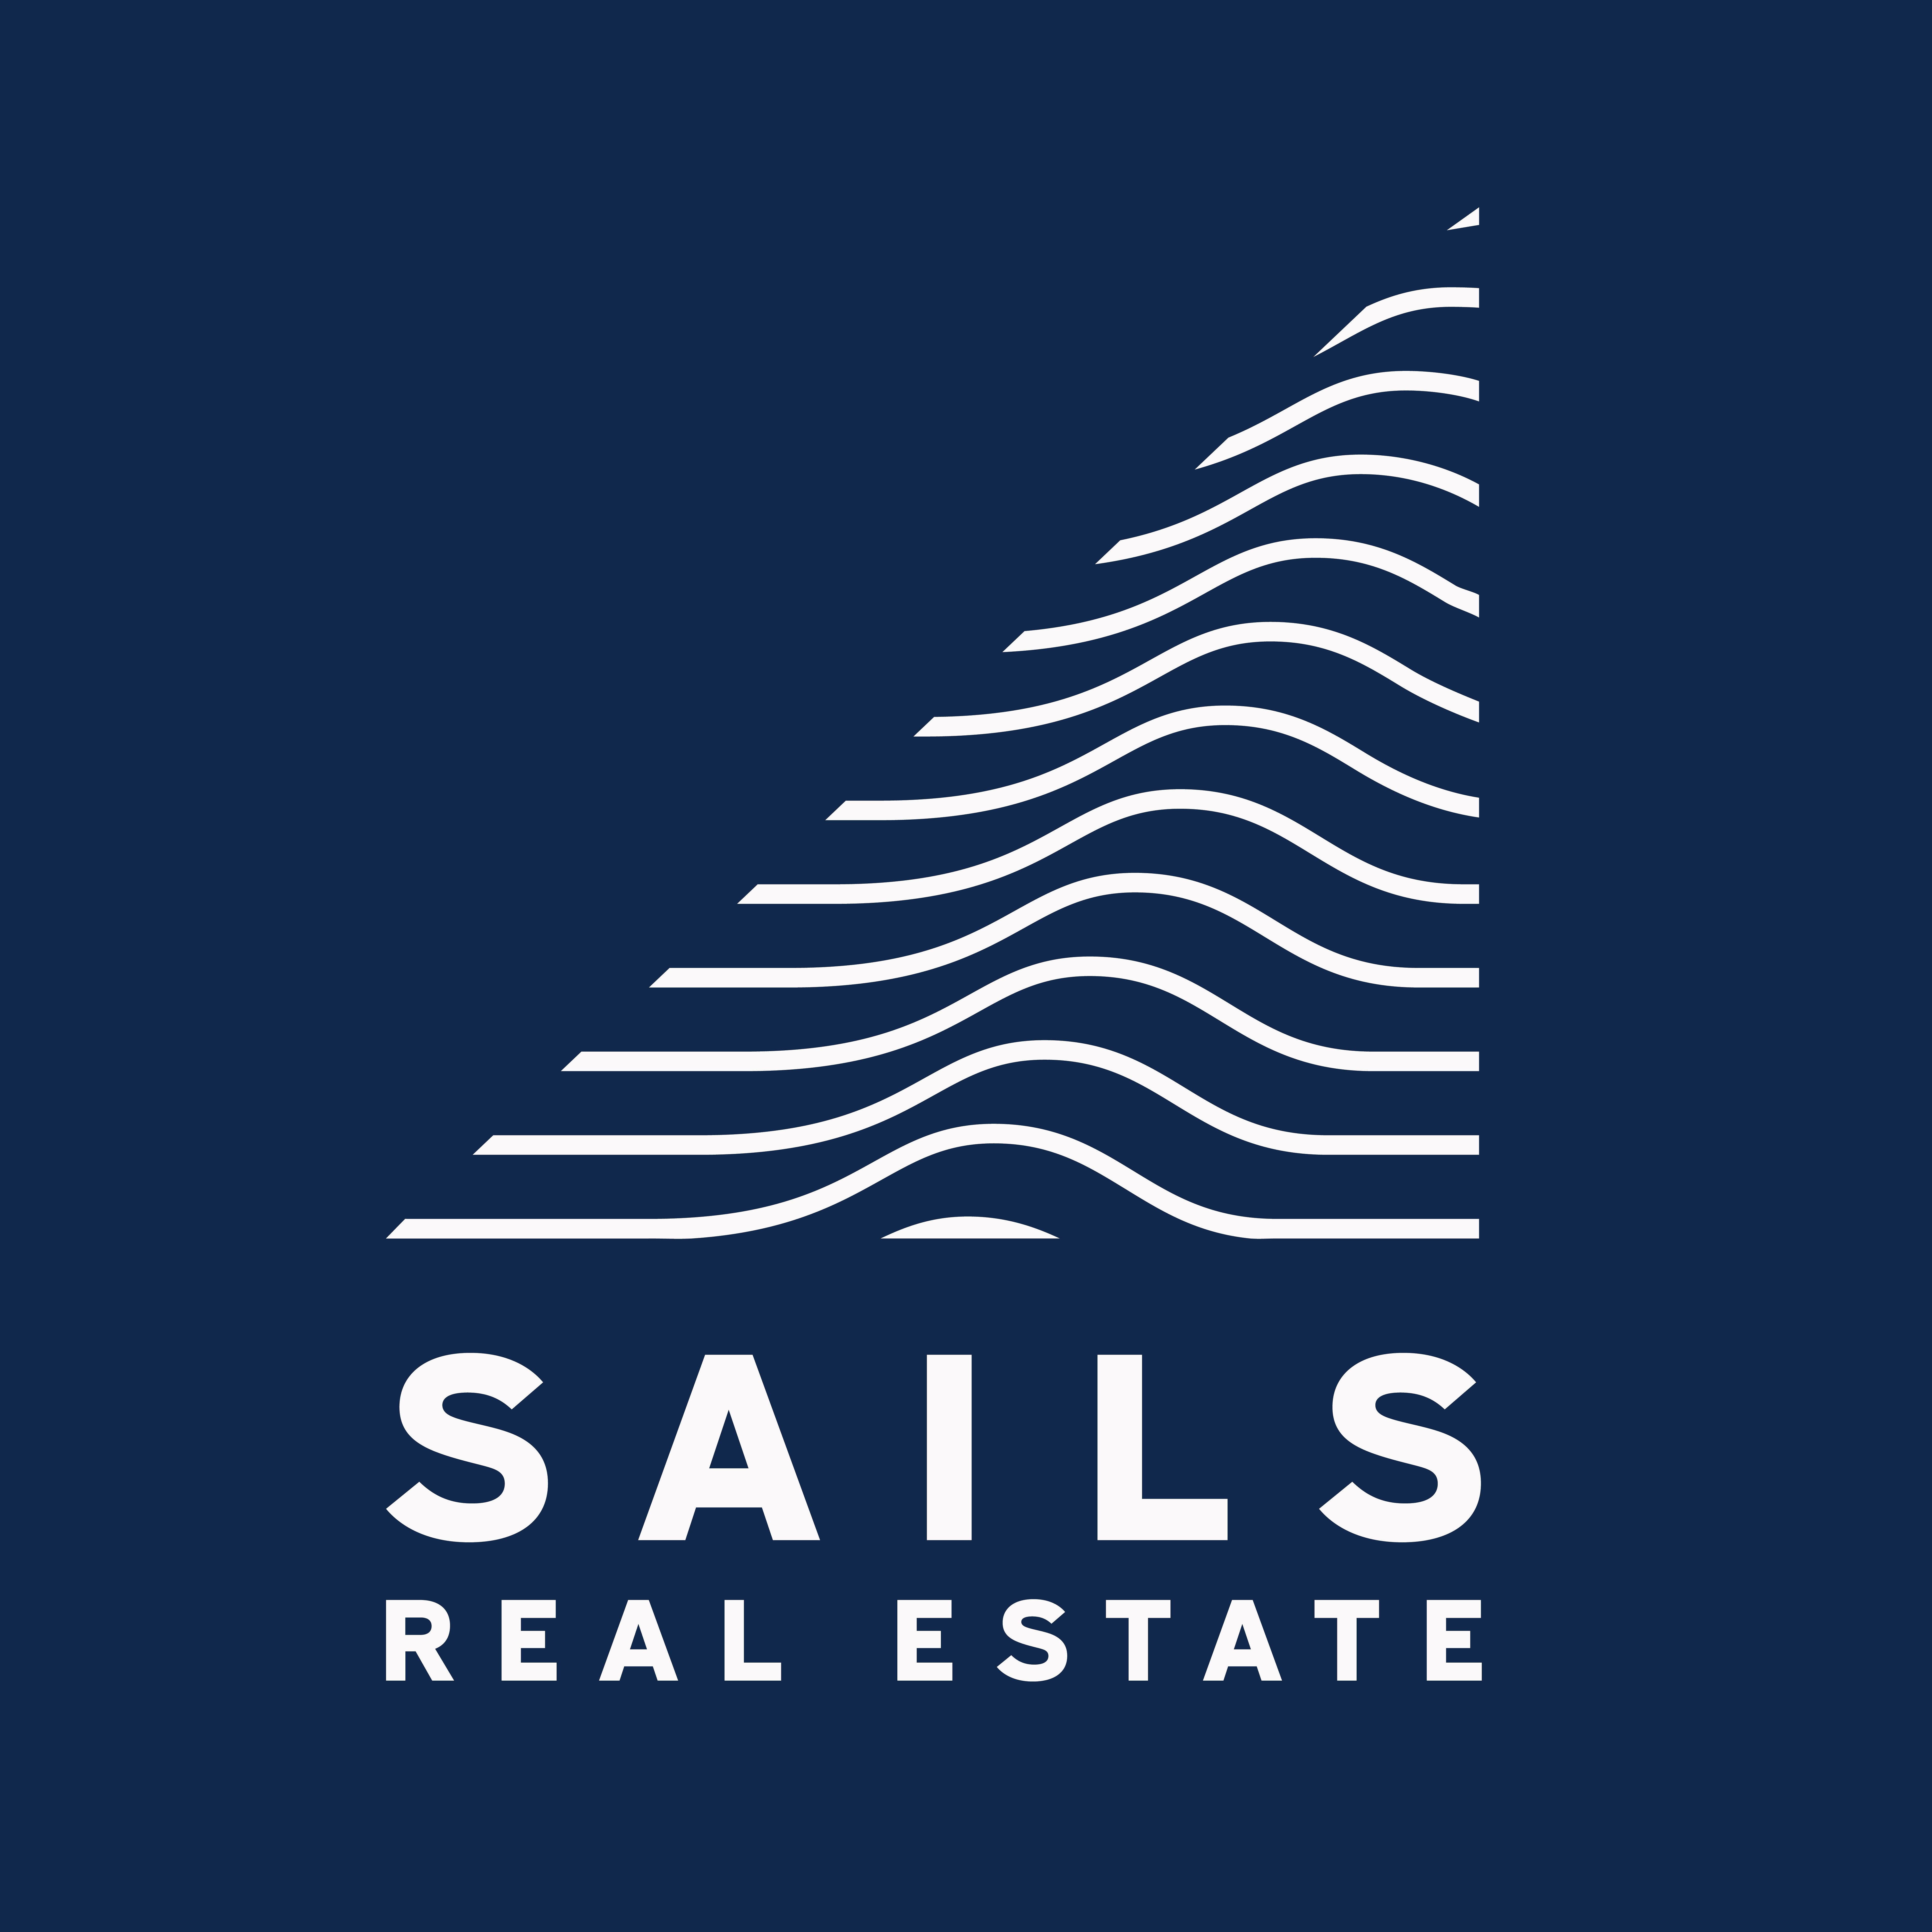 Sails Real Estate Merimbula